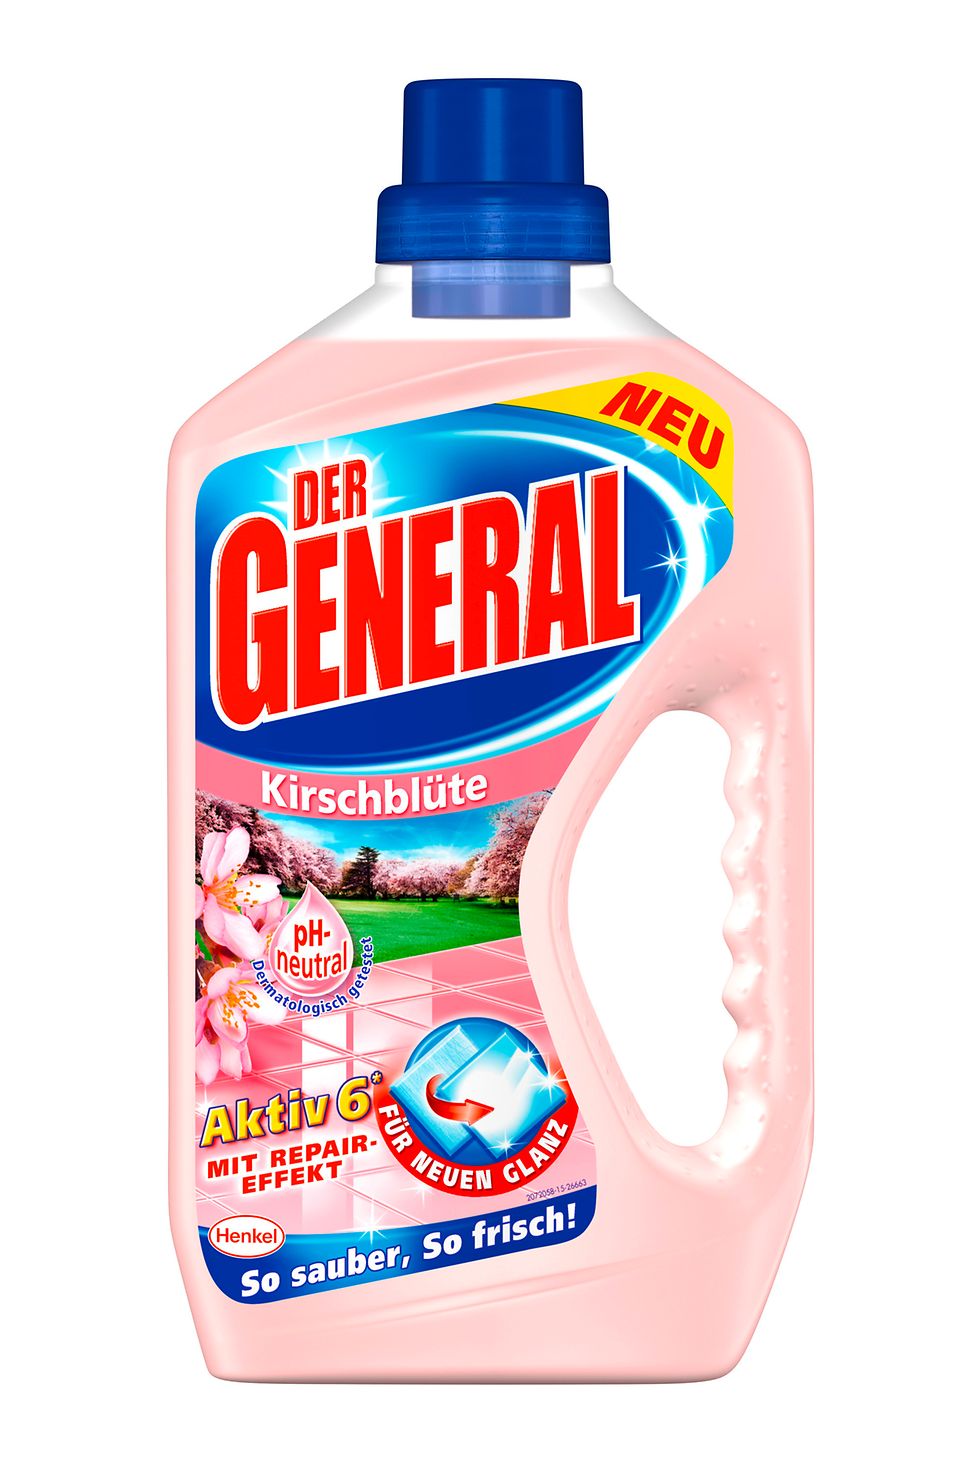 
Der General Aktiv 6 „Kirschblüte“: Zarter Duft und milde Formel.